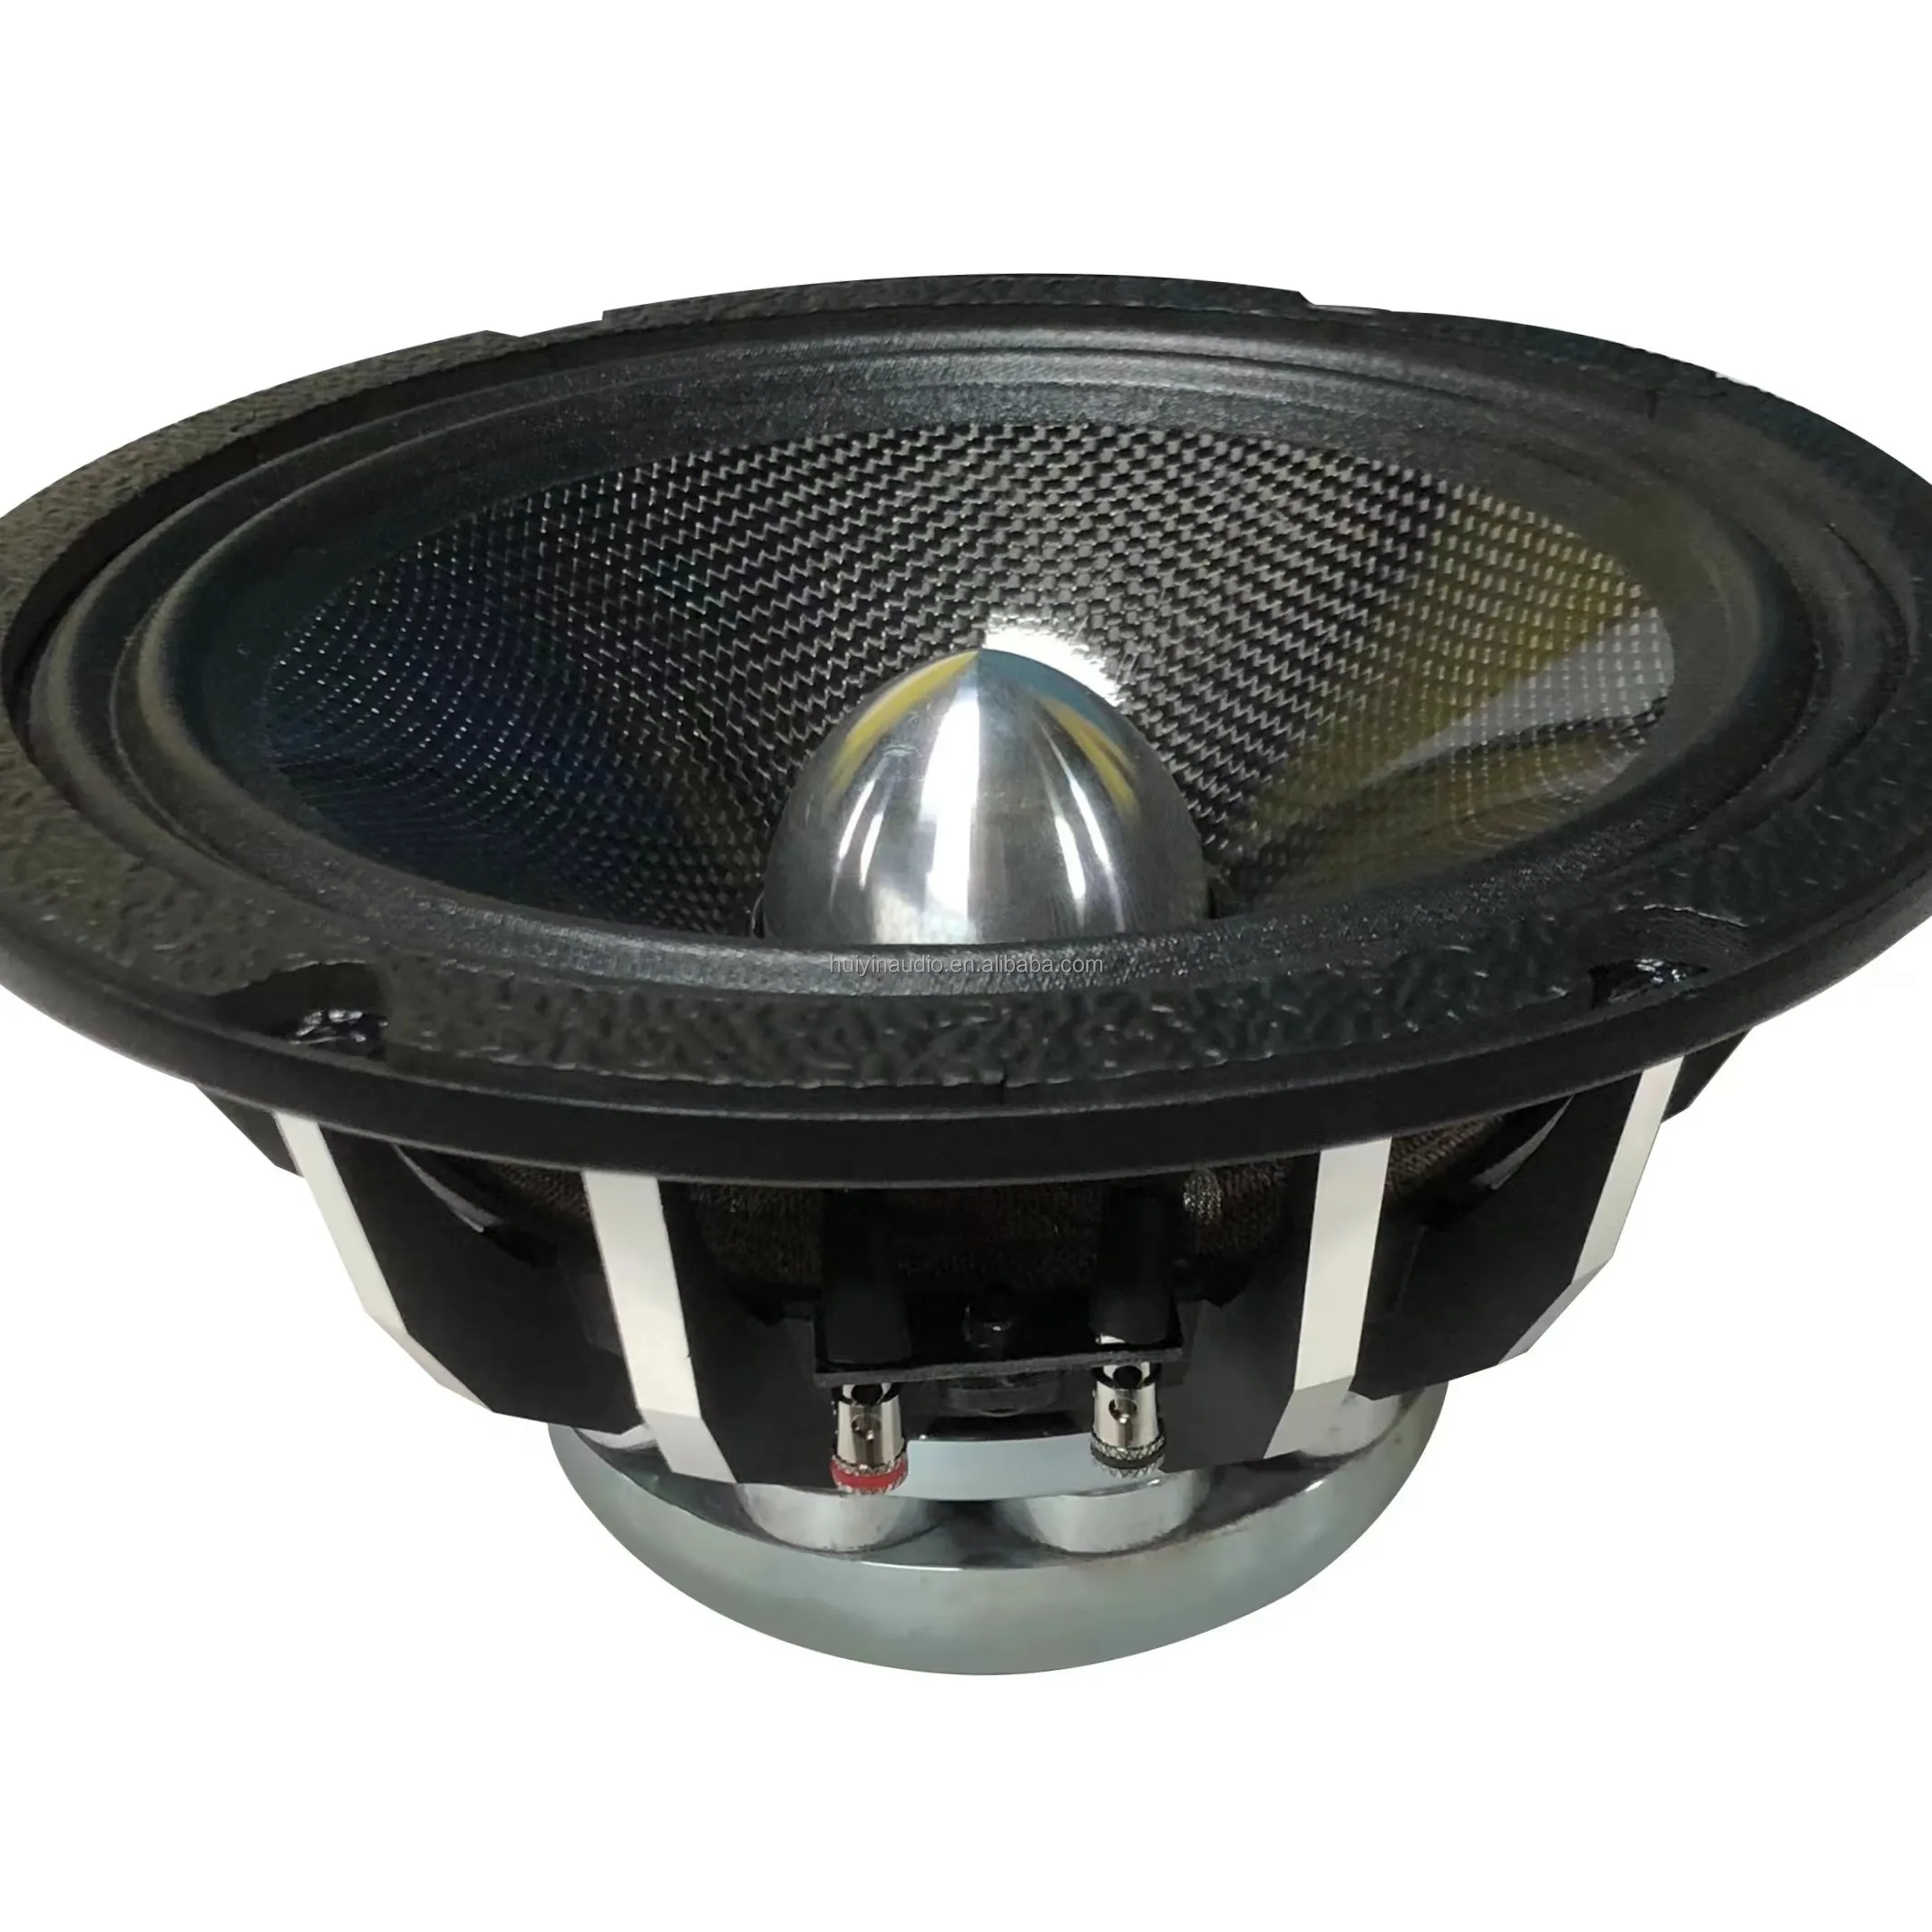 8 inch speaker 250watt neodymium magnet carbon fiber speaker for car 850-081